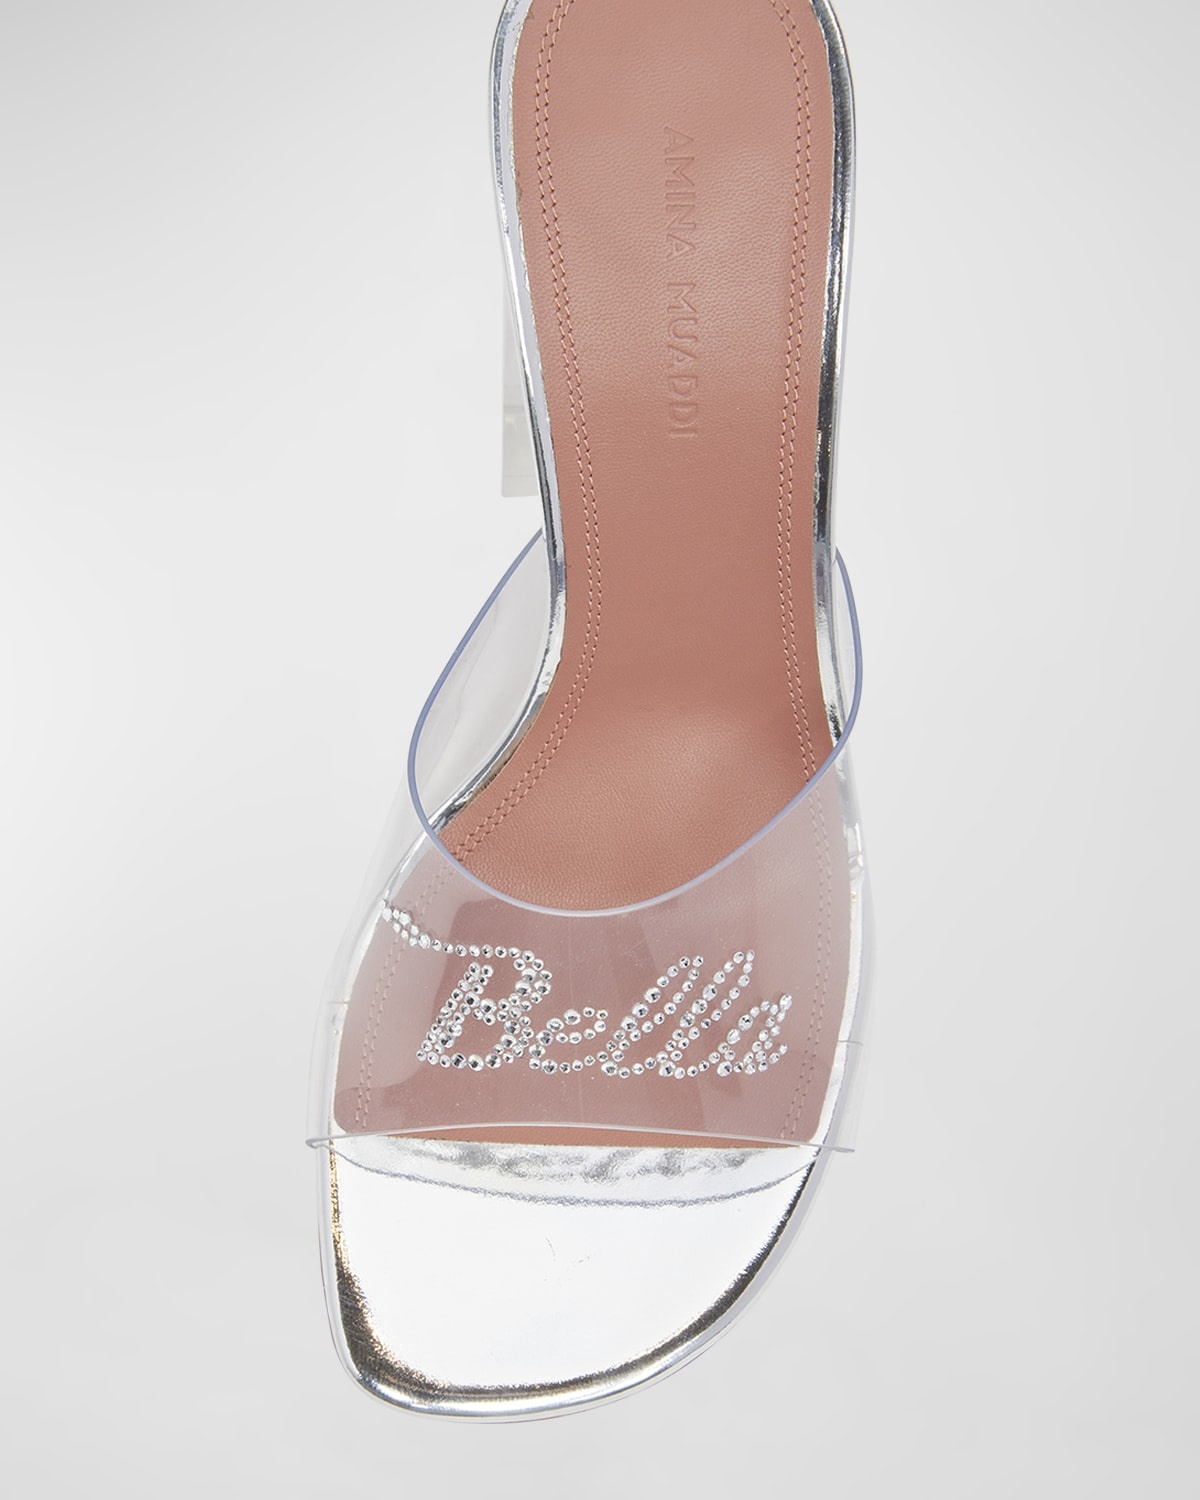 Bella Glass Slipper Mule Sandals - 5